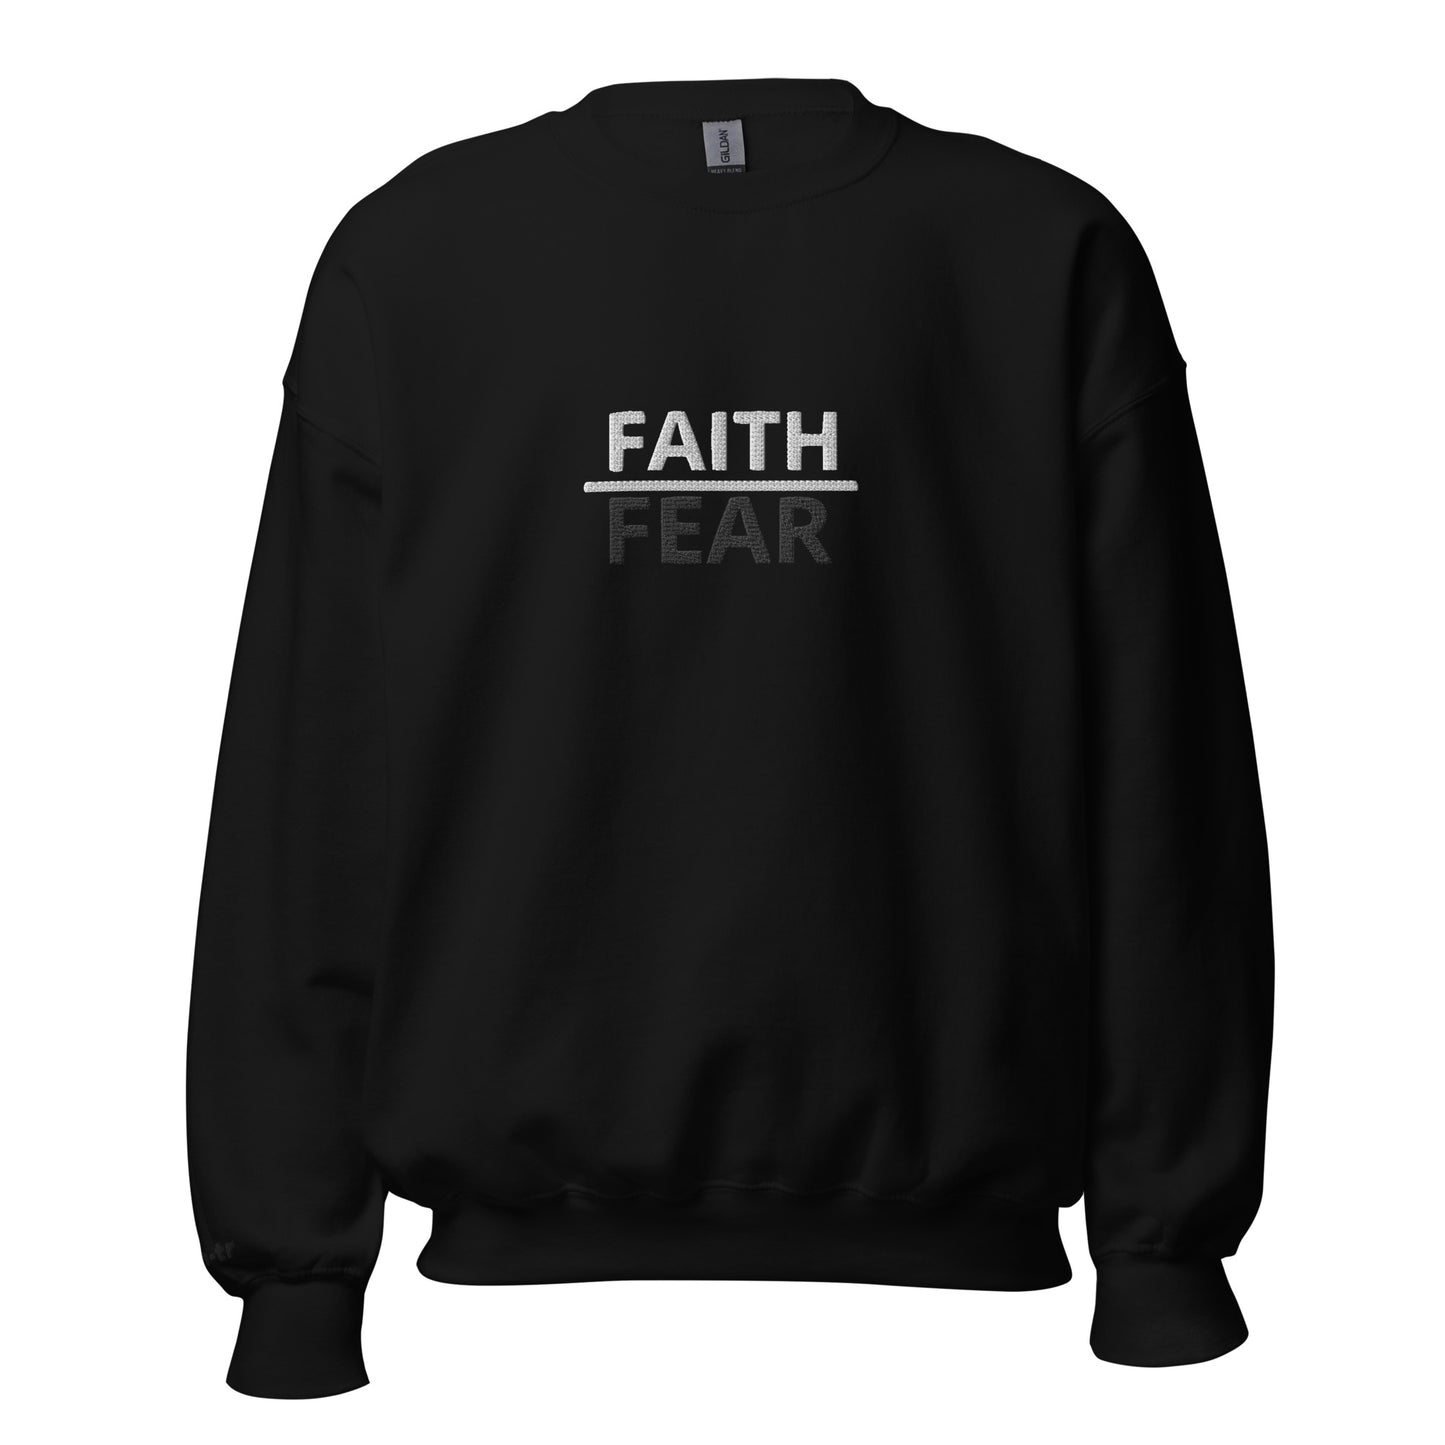 Faith over Fear Unisex Sweatshirt